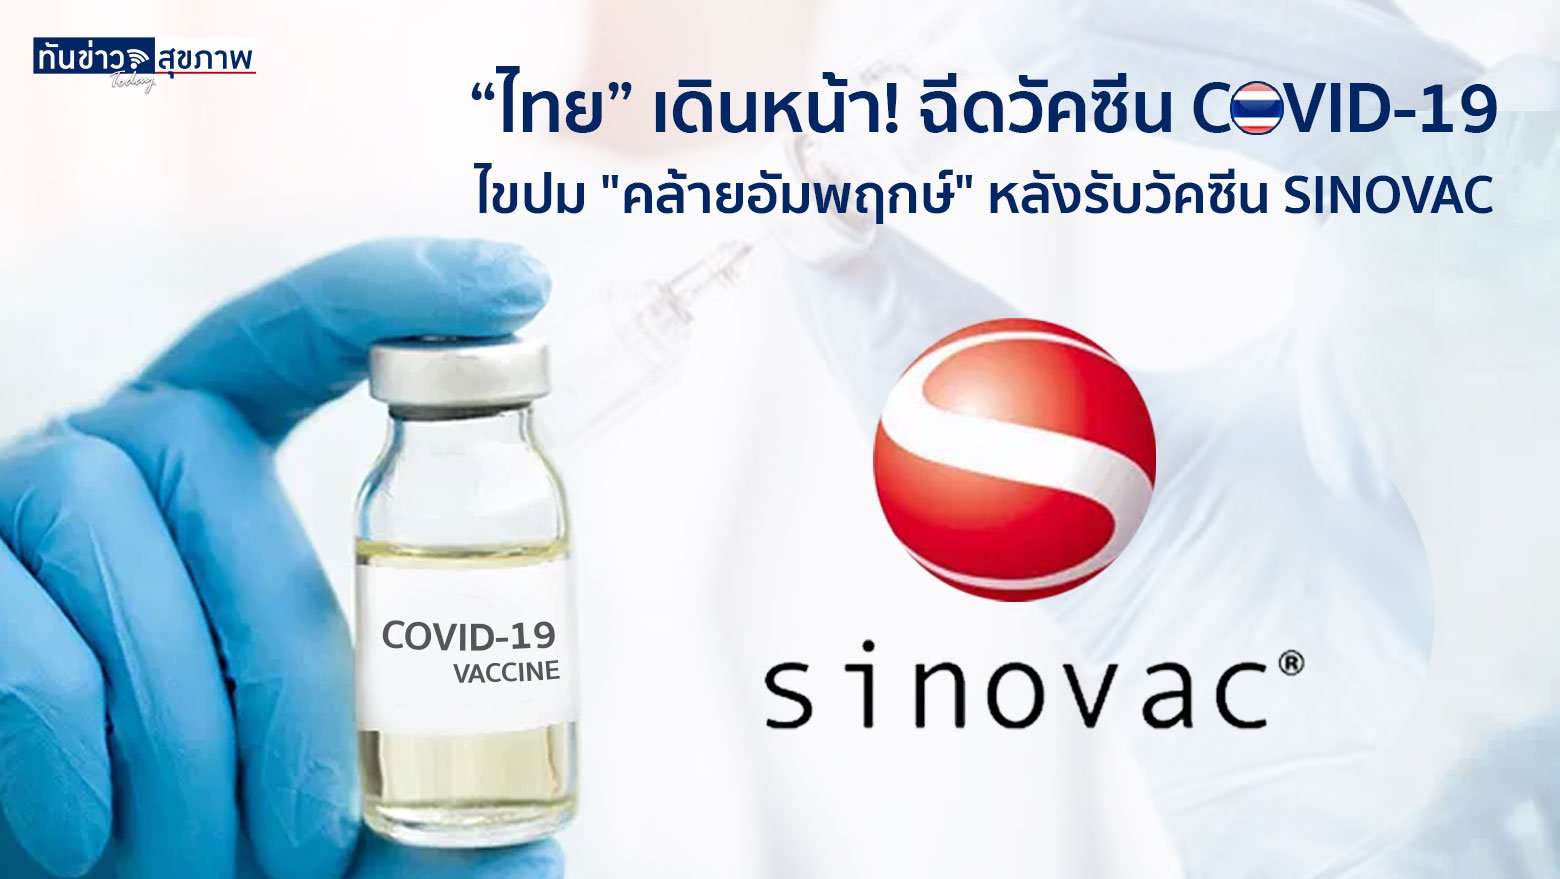 “ไทย” เดินหน้า! ฉีดวัคซีน COVID-19 ไขปม "คล้ายอัมพฤกษ์" หลังรับวัคซีน SINOVAC